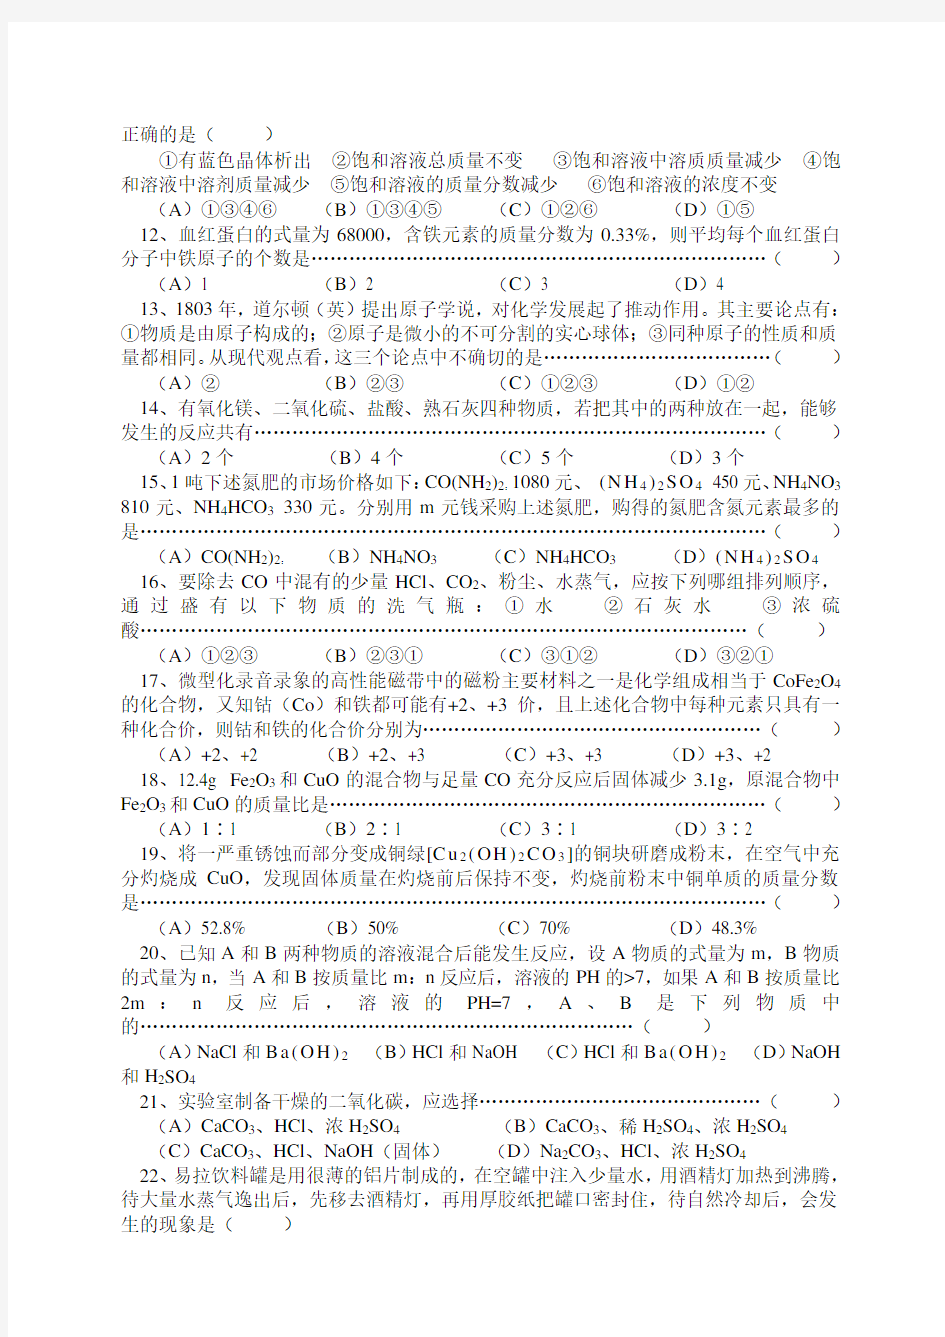 初中化学竞赛试题-2018年全国初中学生(第十六届天原杯)化学竞赛(上海初赛) 最新